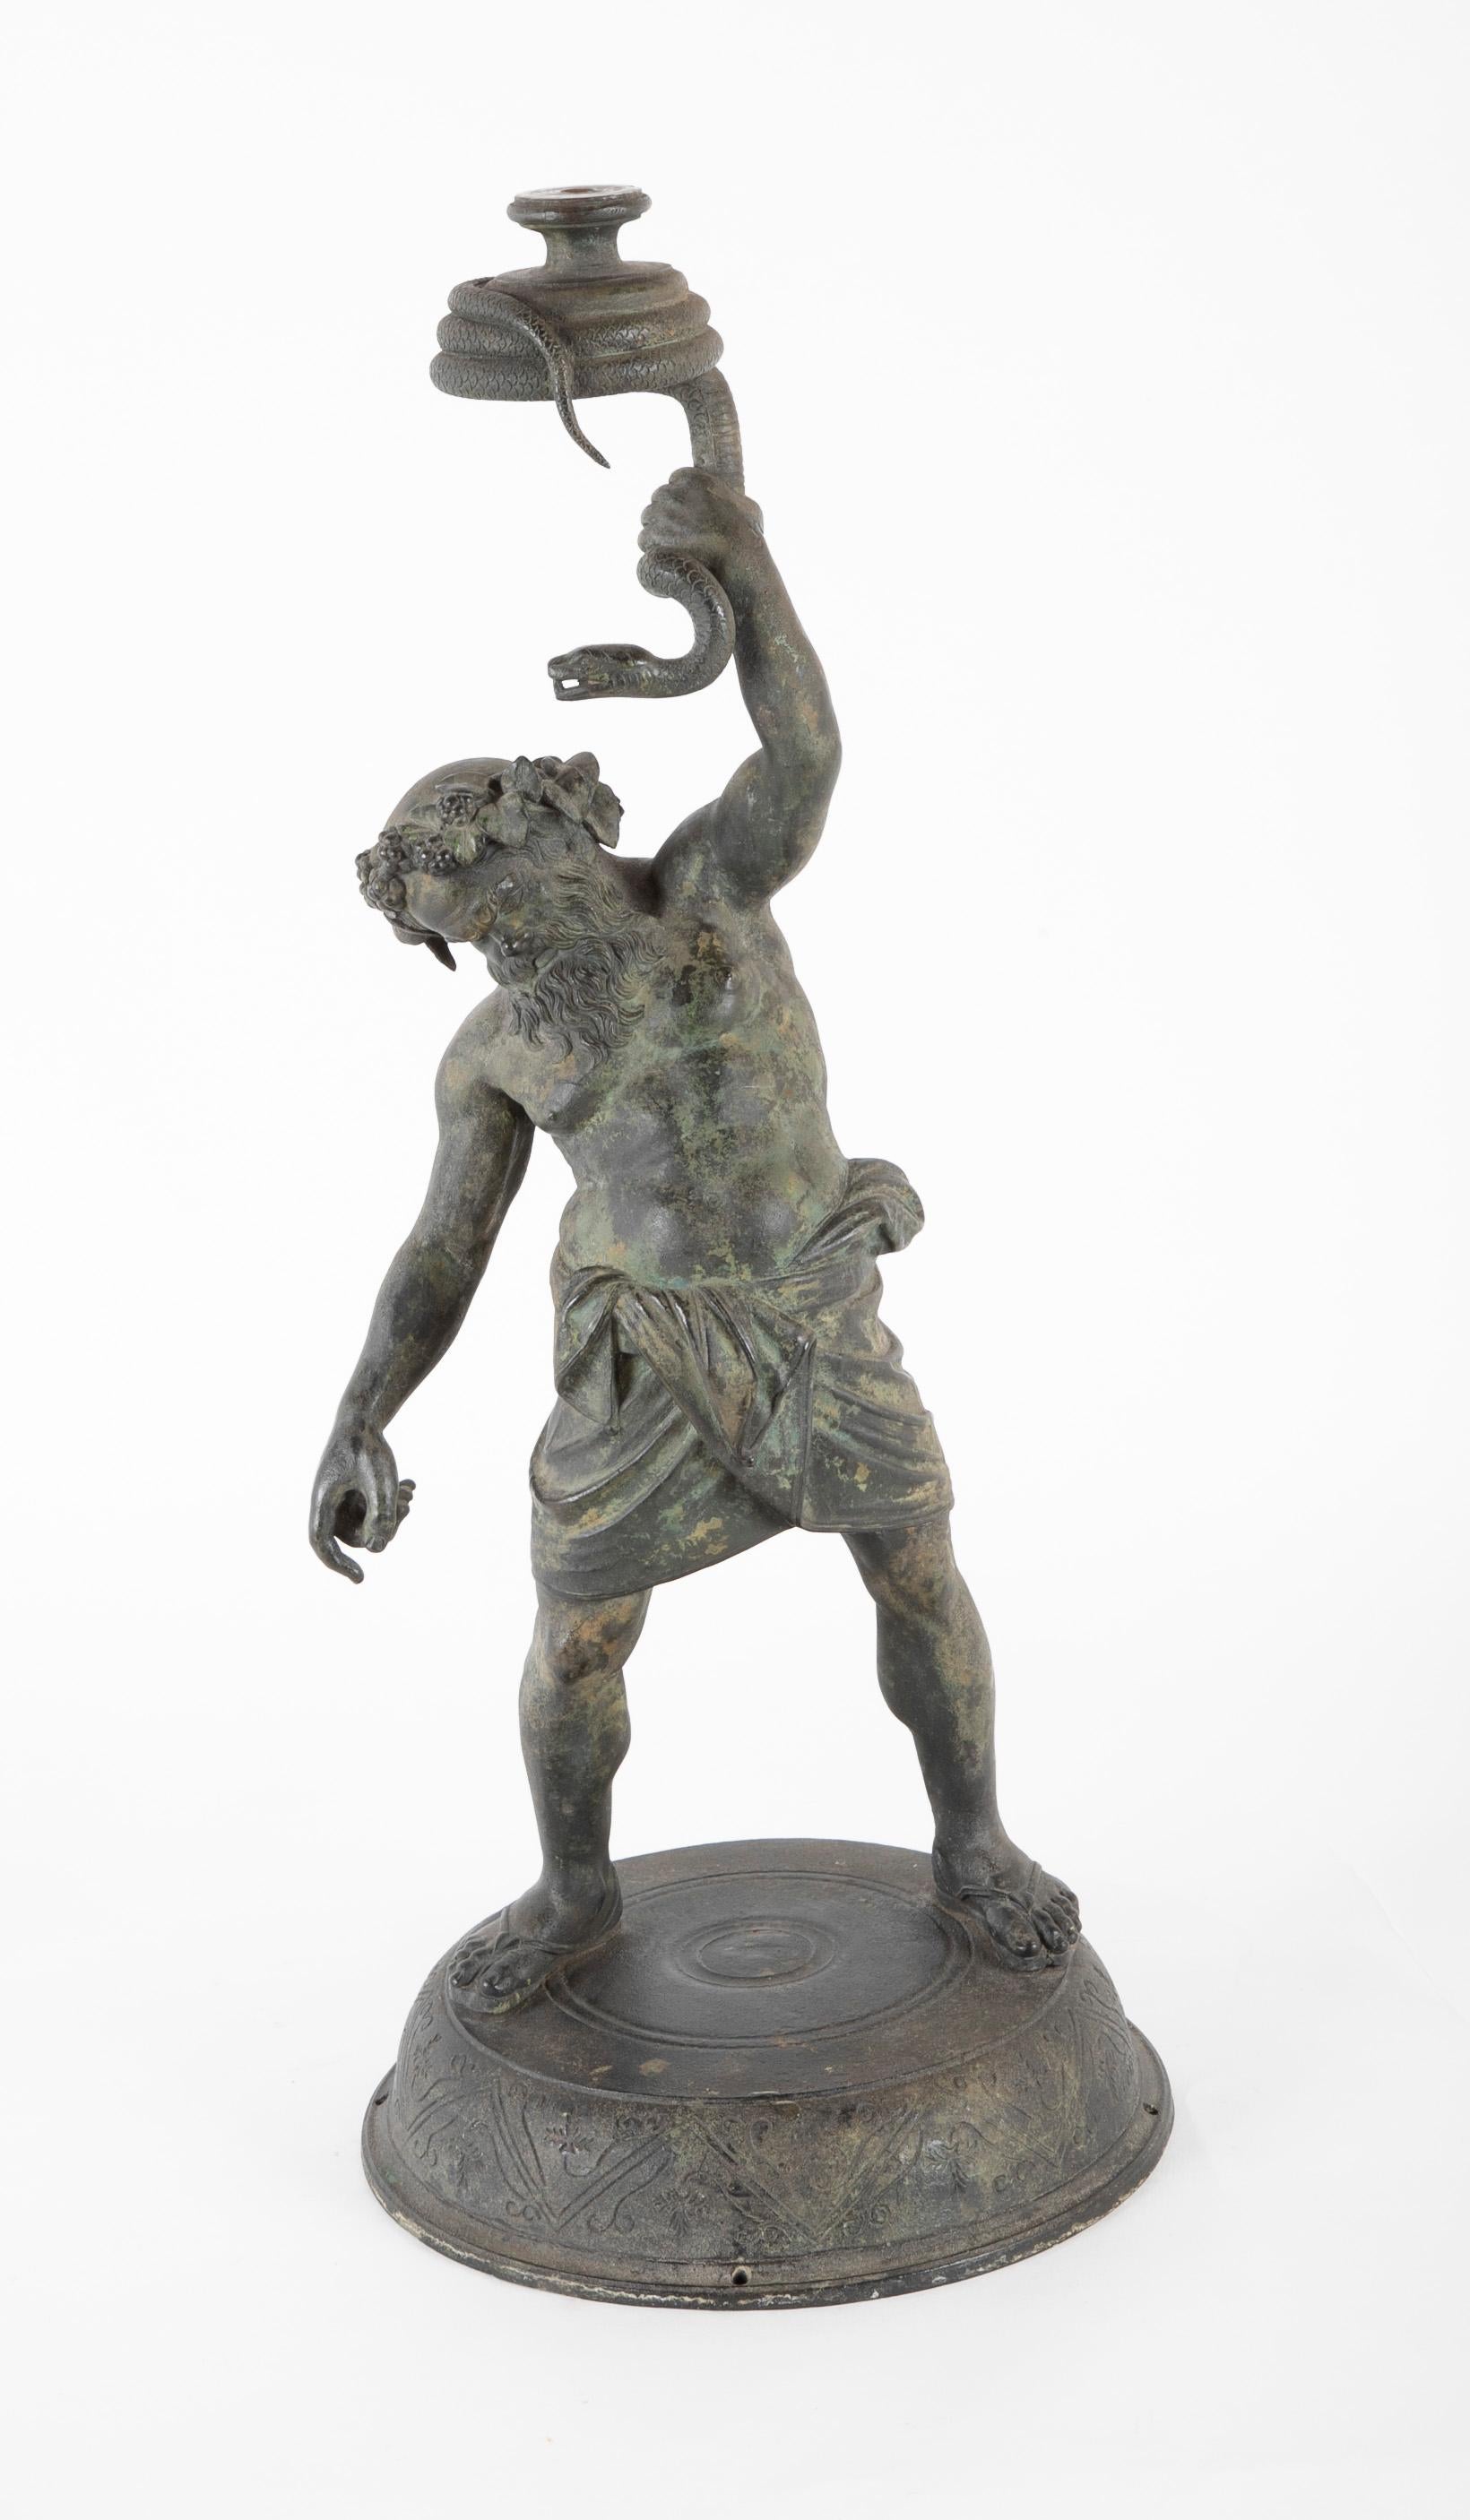 Bronze Grand Tour italien de qualité supérieure représentant le dieu Silène d'après l'original romain découvert à Pompéi en 1864. Ce très beau moulage montre le dieu tenant en l'air un serpent enroulé. On pense que la sculpture originale contenait